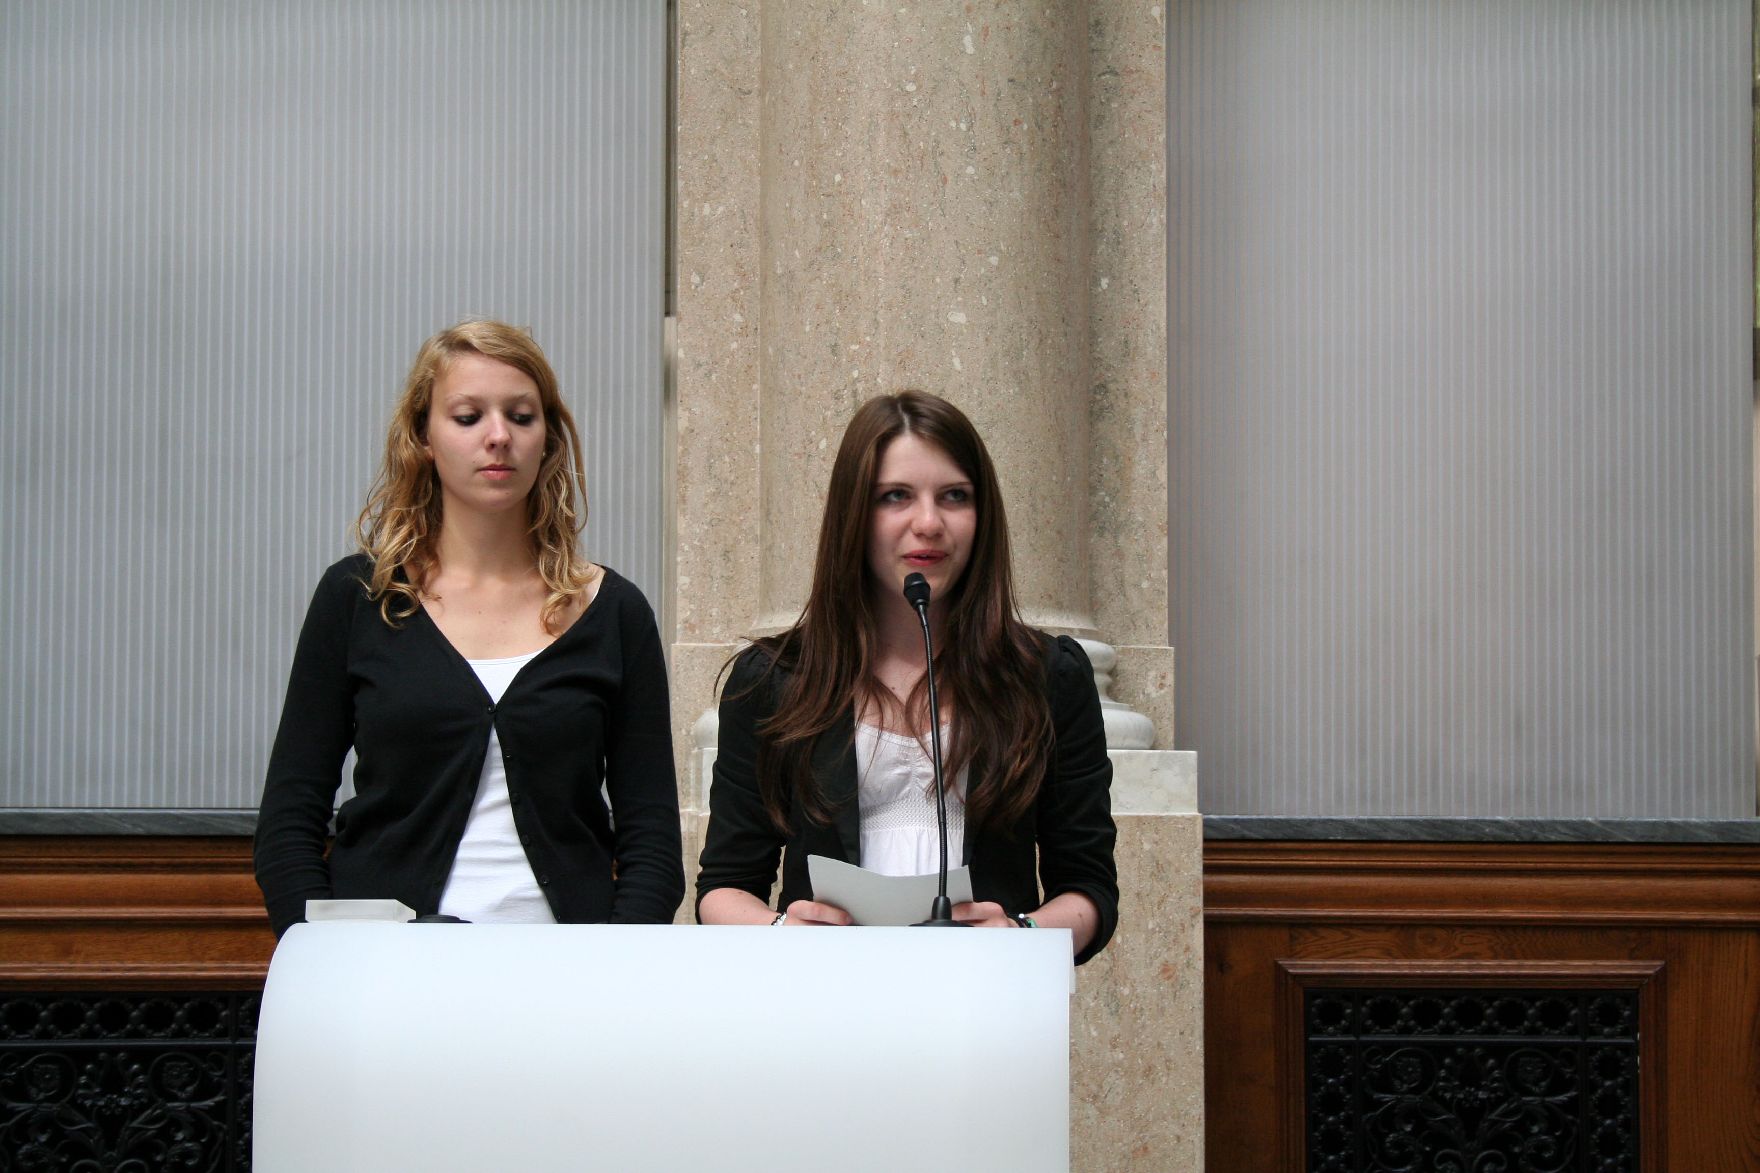 Am 20. und 21. Juni 2011 lud die Bioethikkommission zu einer Tagung zum Thema "Fortpflanzungsmedizin-Quo Vadis? Was will die Gesellschaft?" ins Bundeskanzleramt. Im Bild Schülerinnen BG Horn.